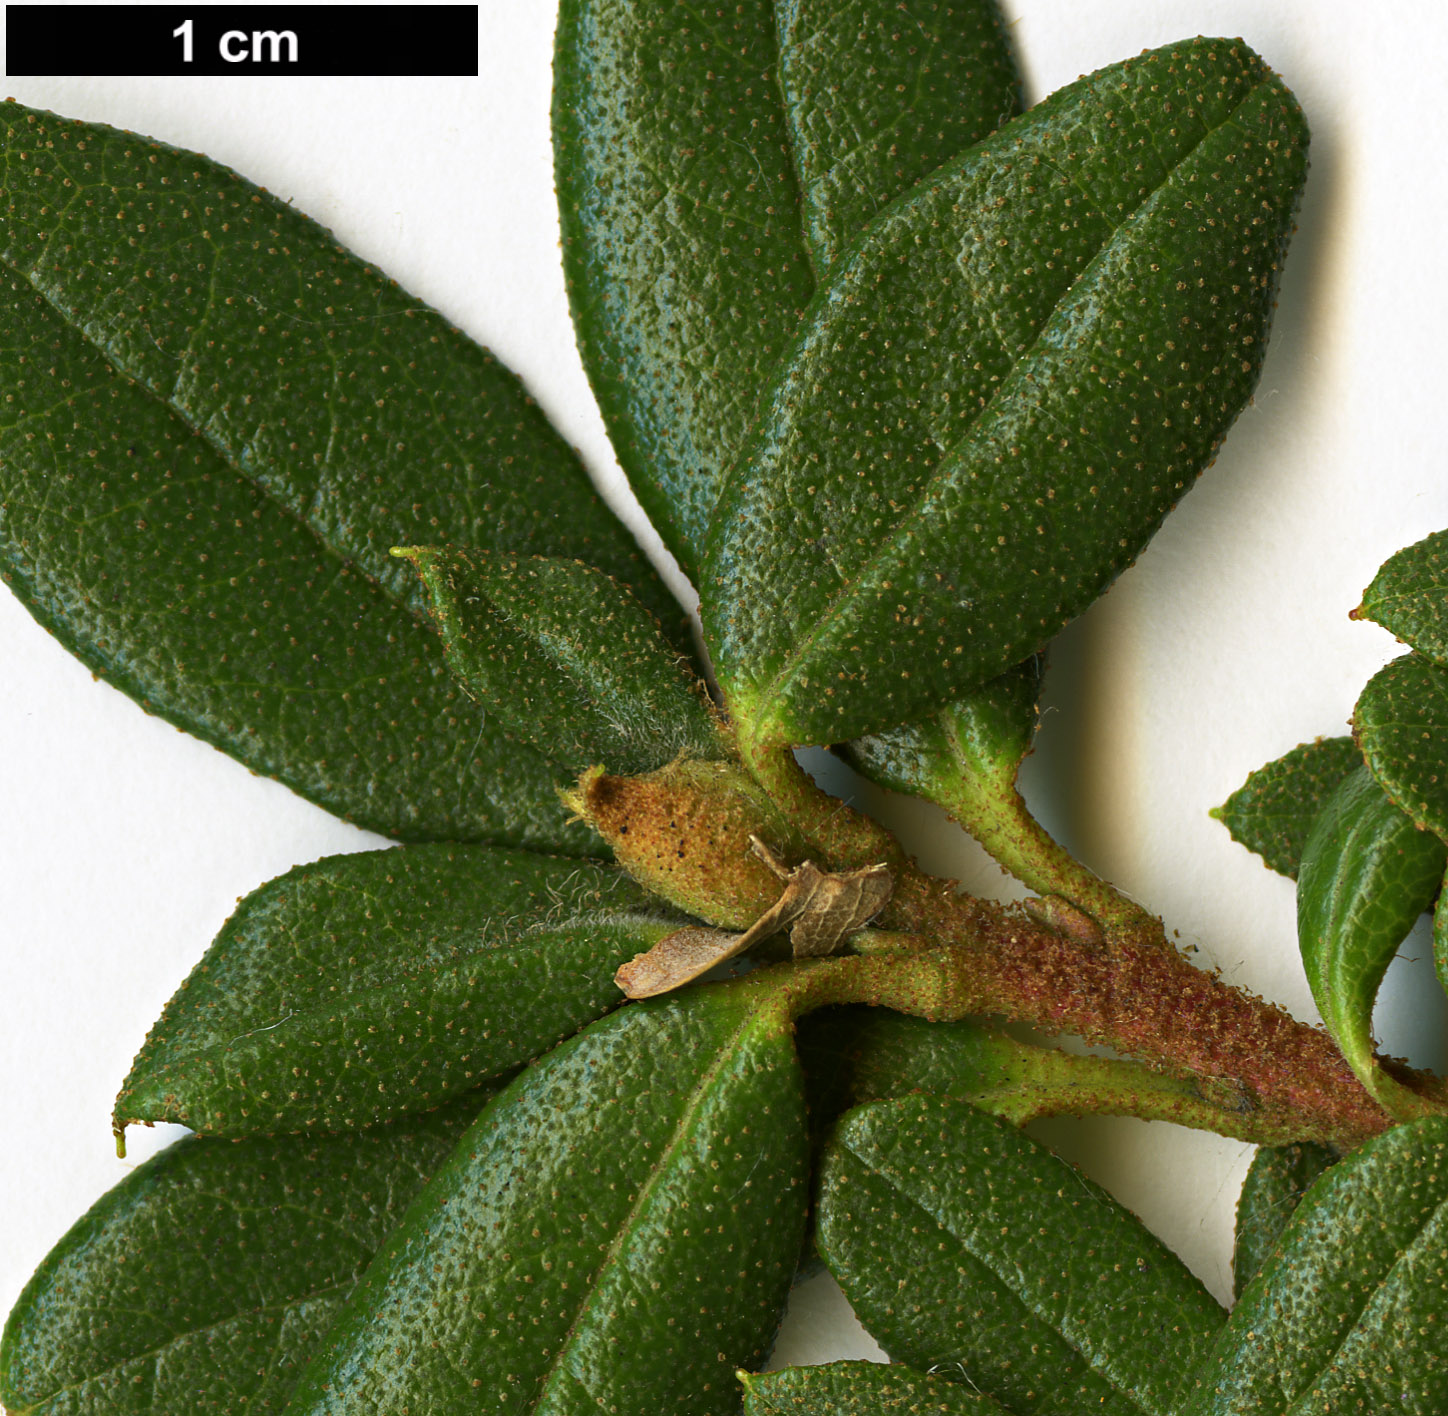 High resolution image: Family: Ericaceae - Genus: Rhododendron - Taxon: sargentianum - SpeciesSub: 'Whitebait' WAIT